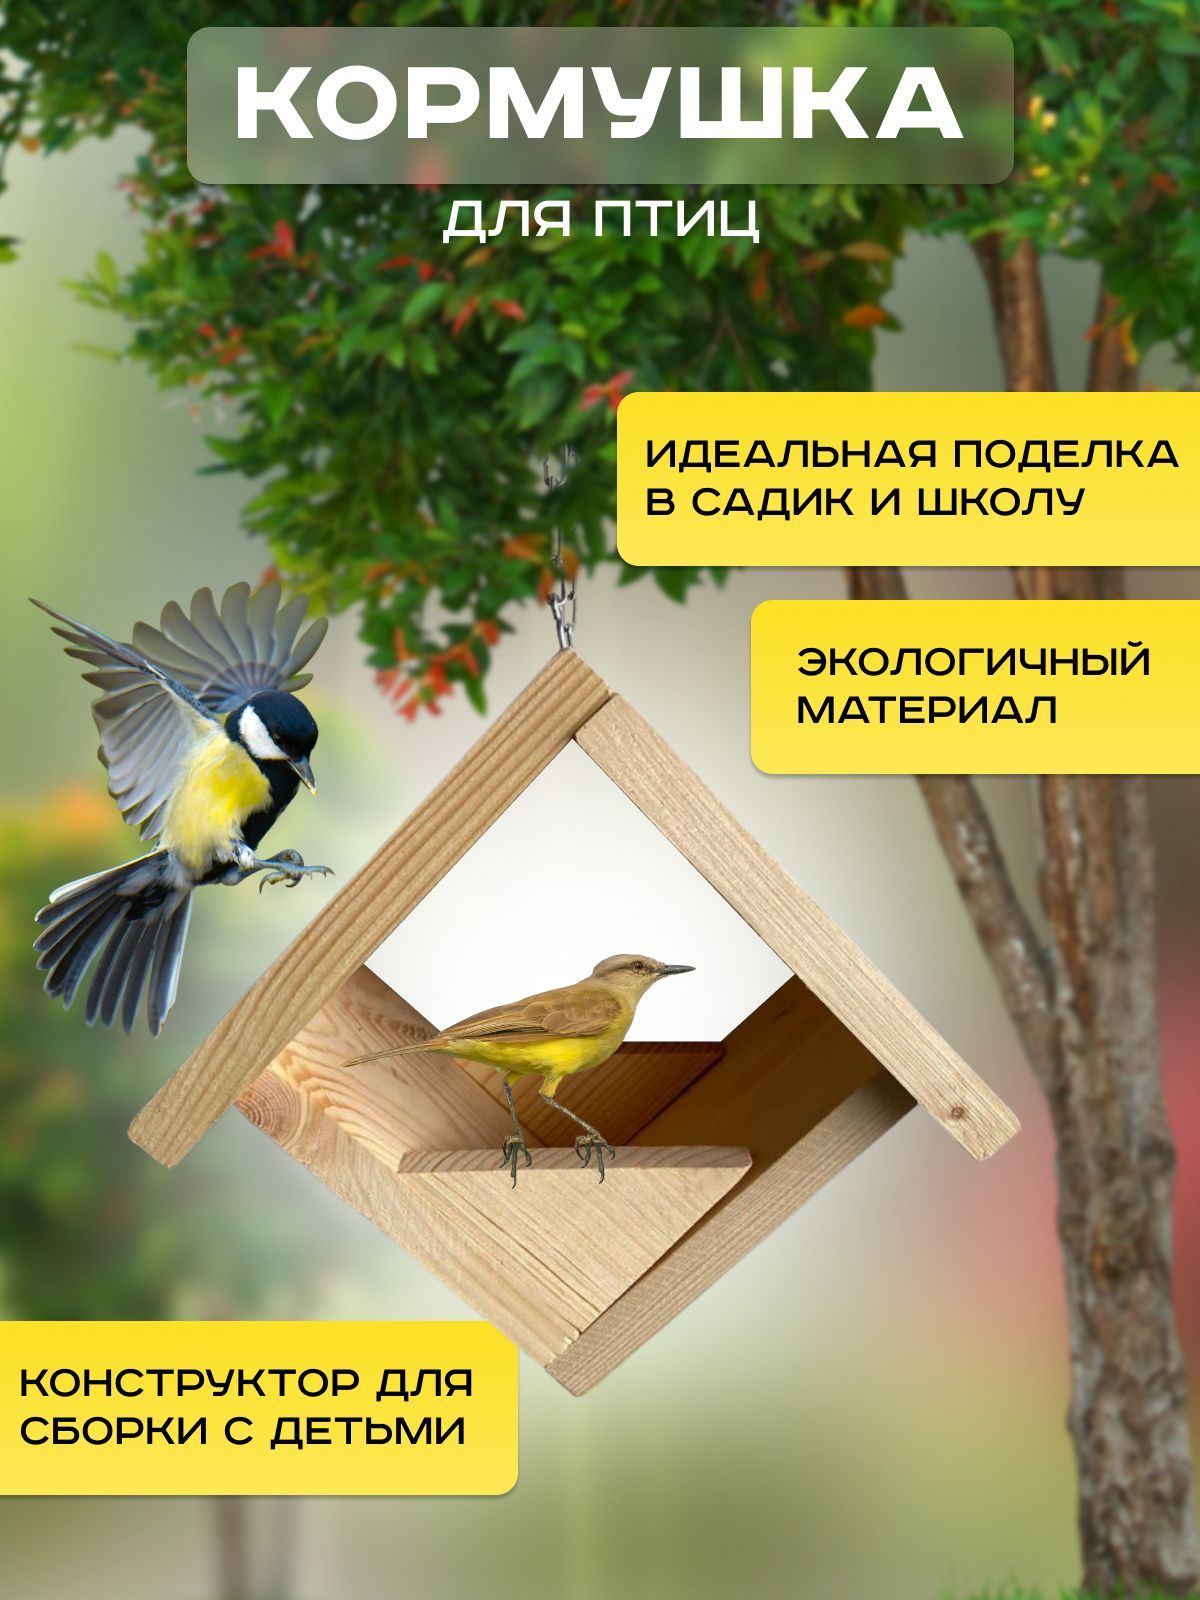 Кормушка для птиц своими руками из коробок | Интересуюсь | Дзен